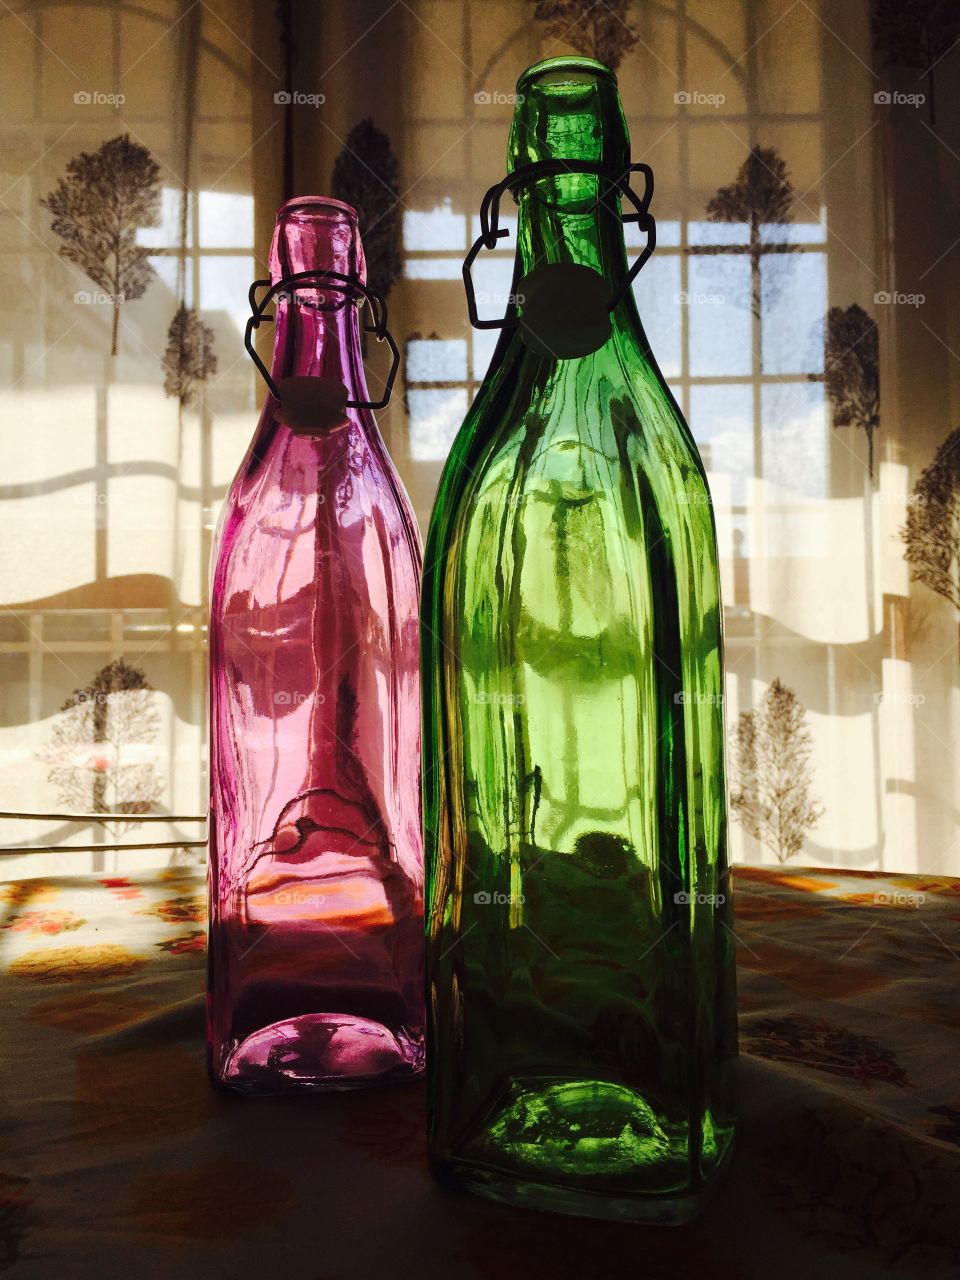 Le mie nuove bottiglie coloratissime per l'acqua ;-)